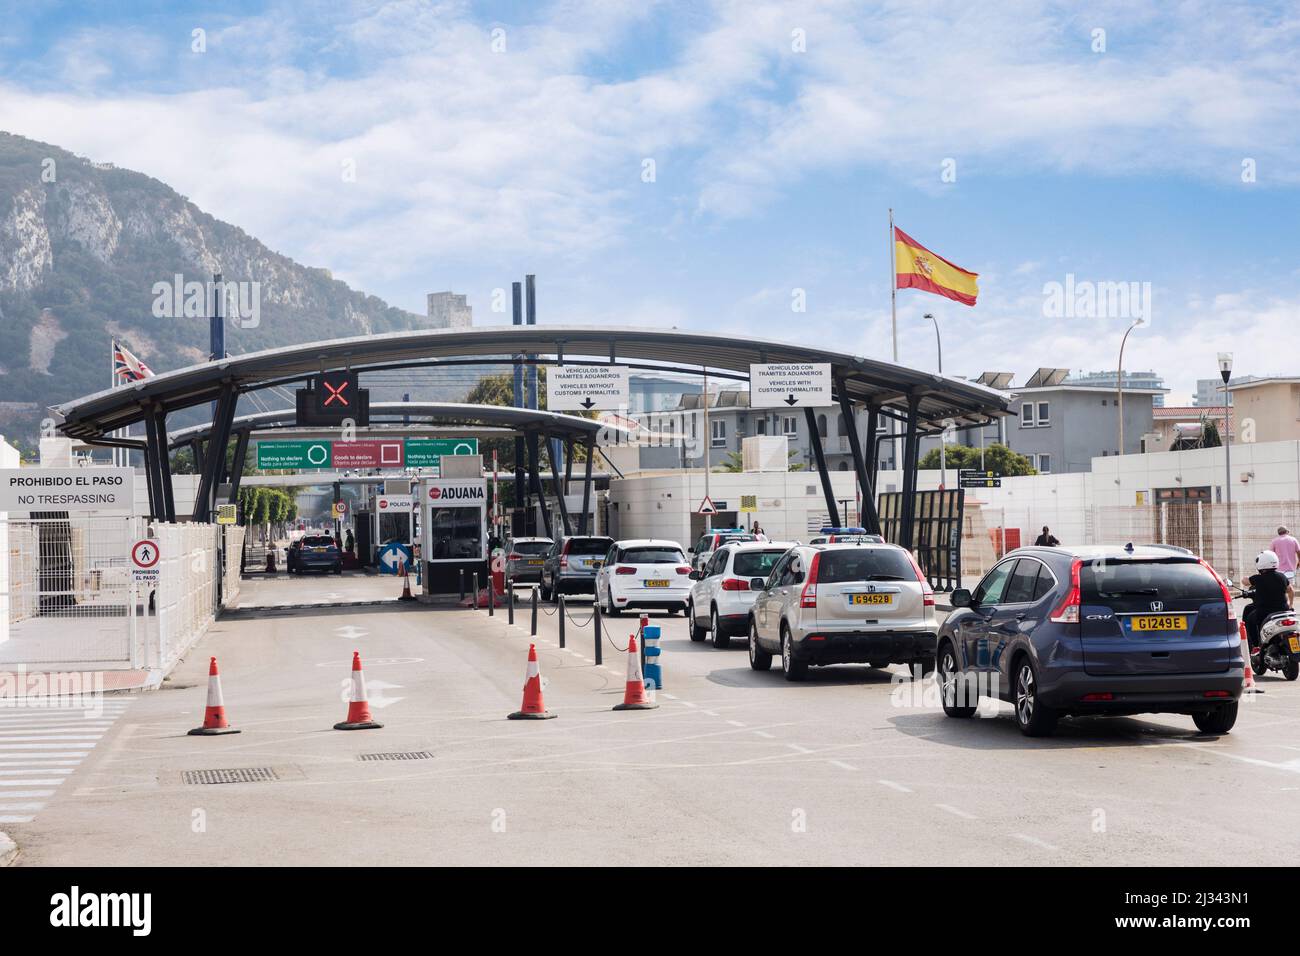 Voitures attendant d'entrer à Gibraltar par les contrôles douaniers, la Linea de la Concepcion, Espagne Banque D'Images